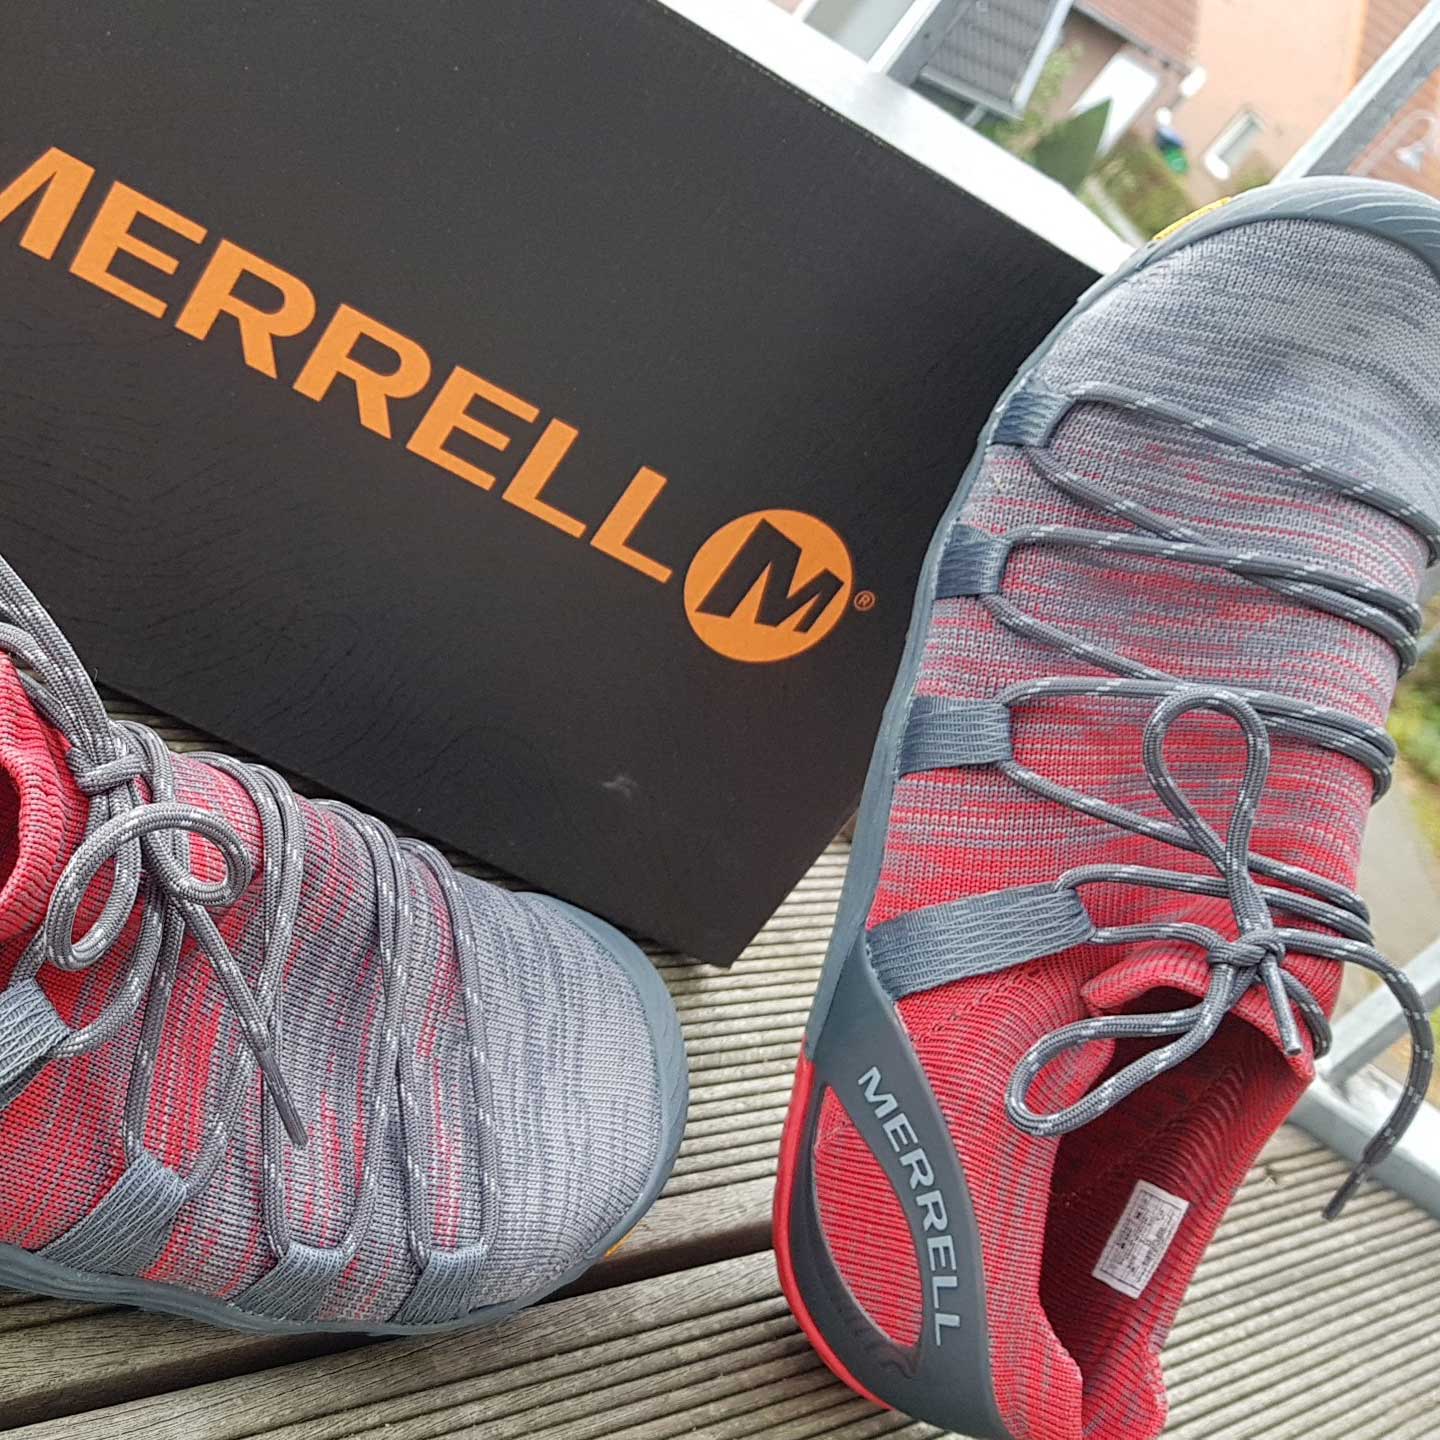 Merrell Vapor Glove 4 3D - Test \u0026 Review